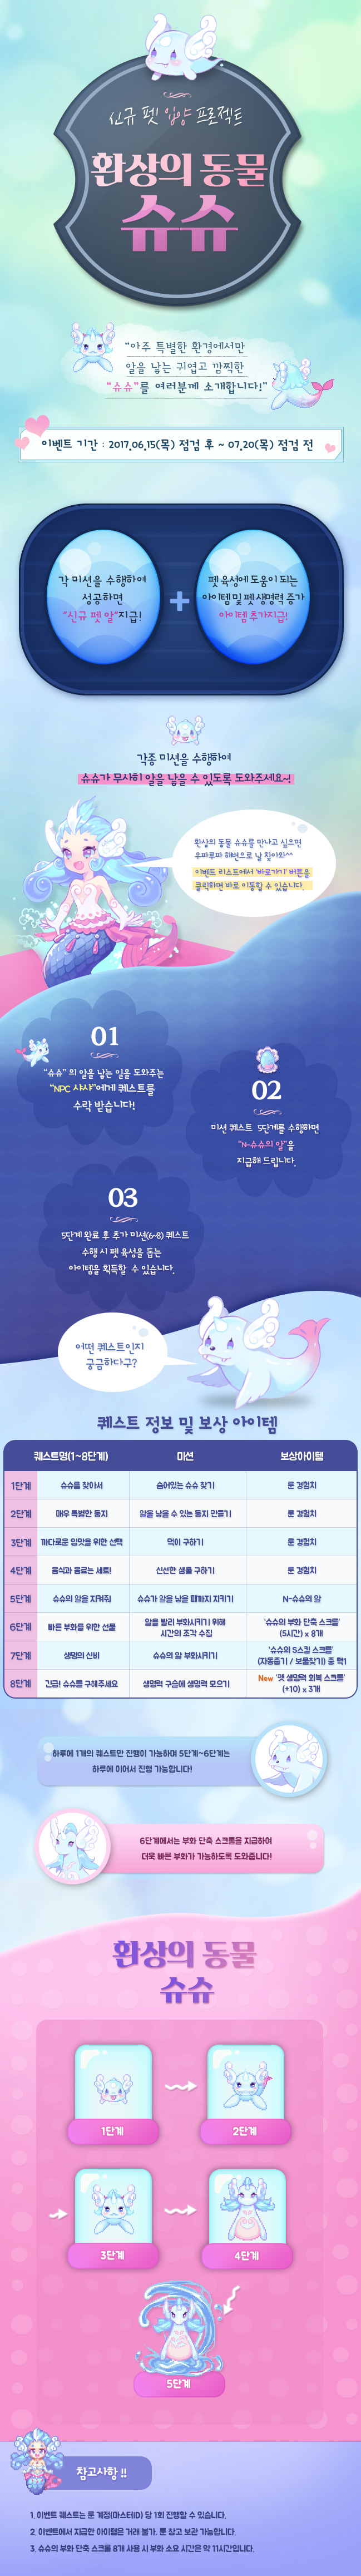 신규 펫 입양 프로젝트 환상의 동물 슈슈